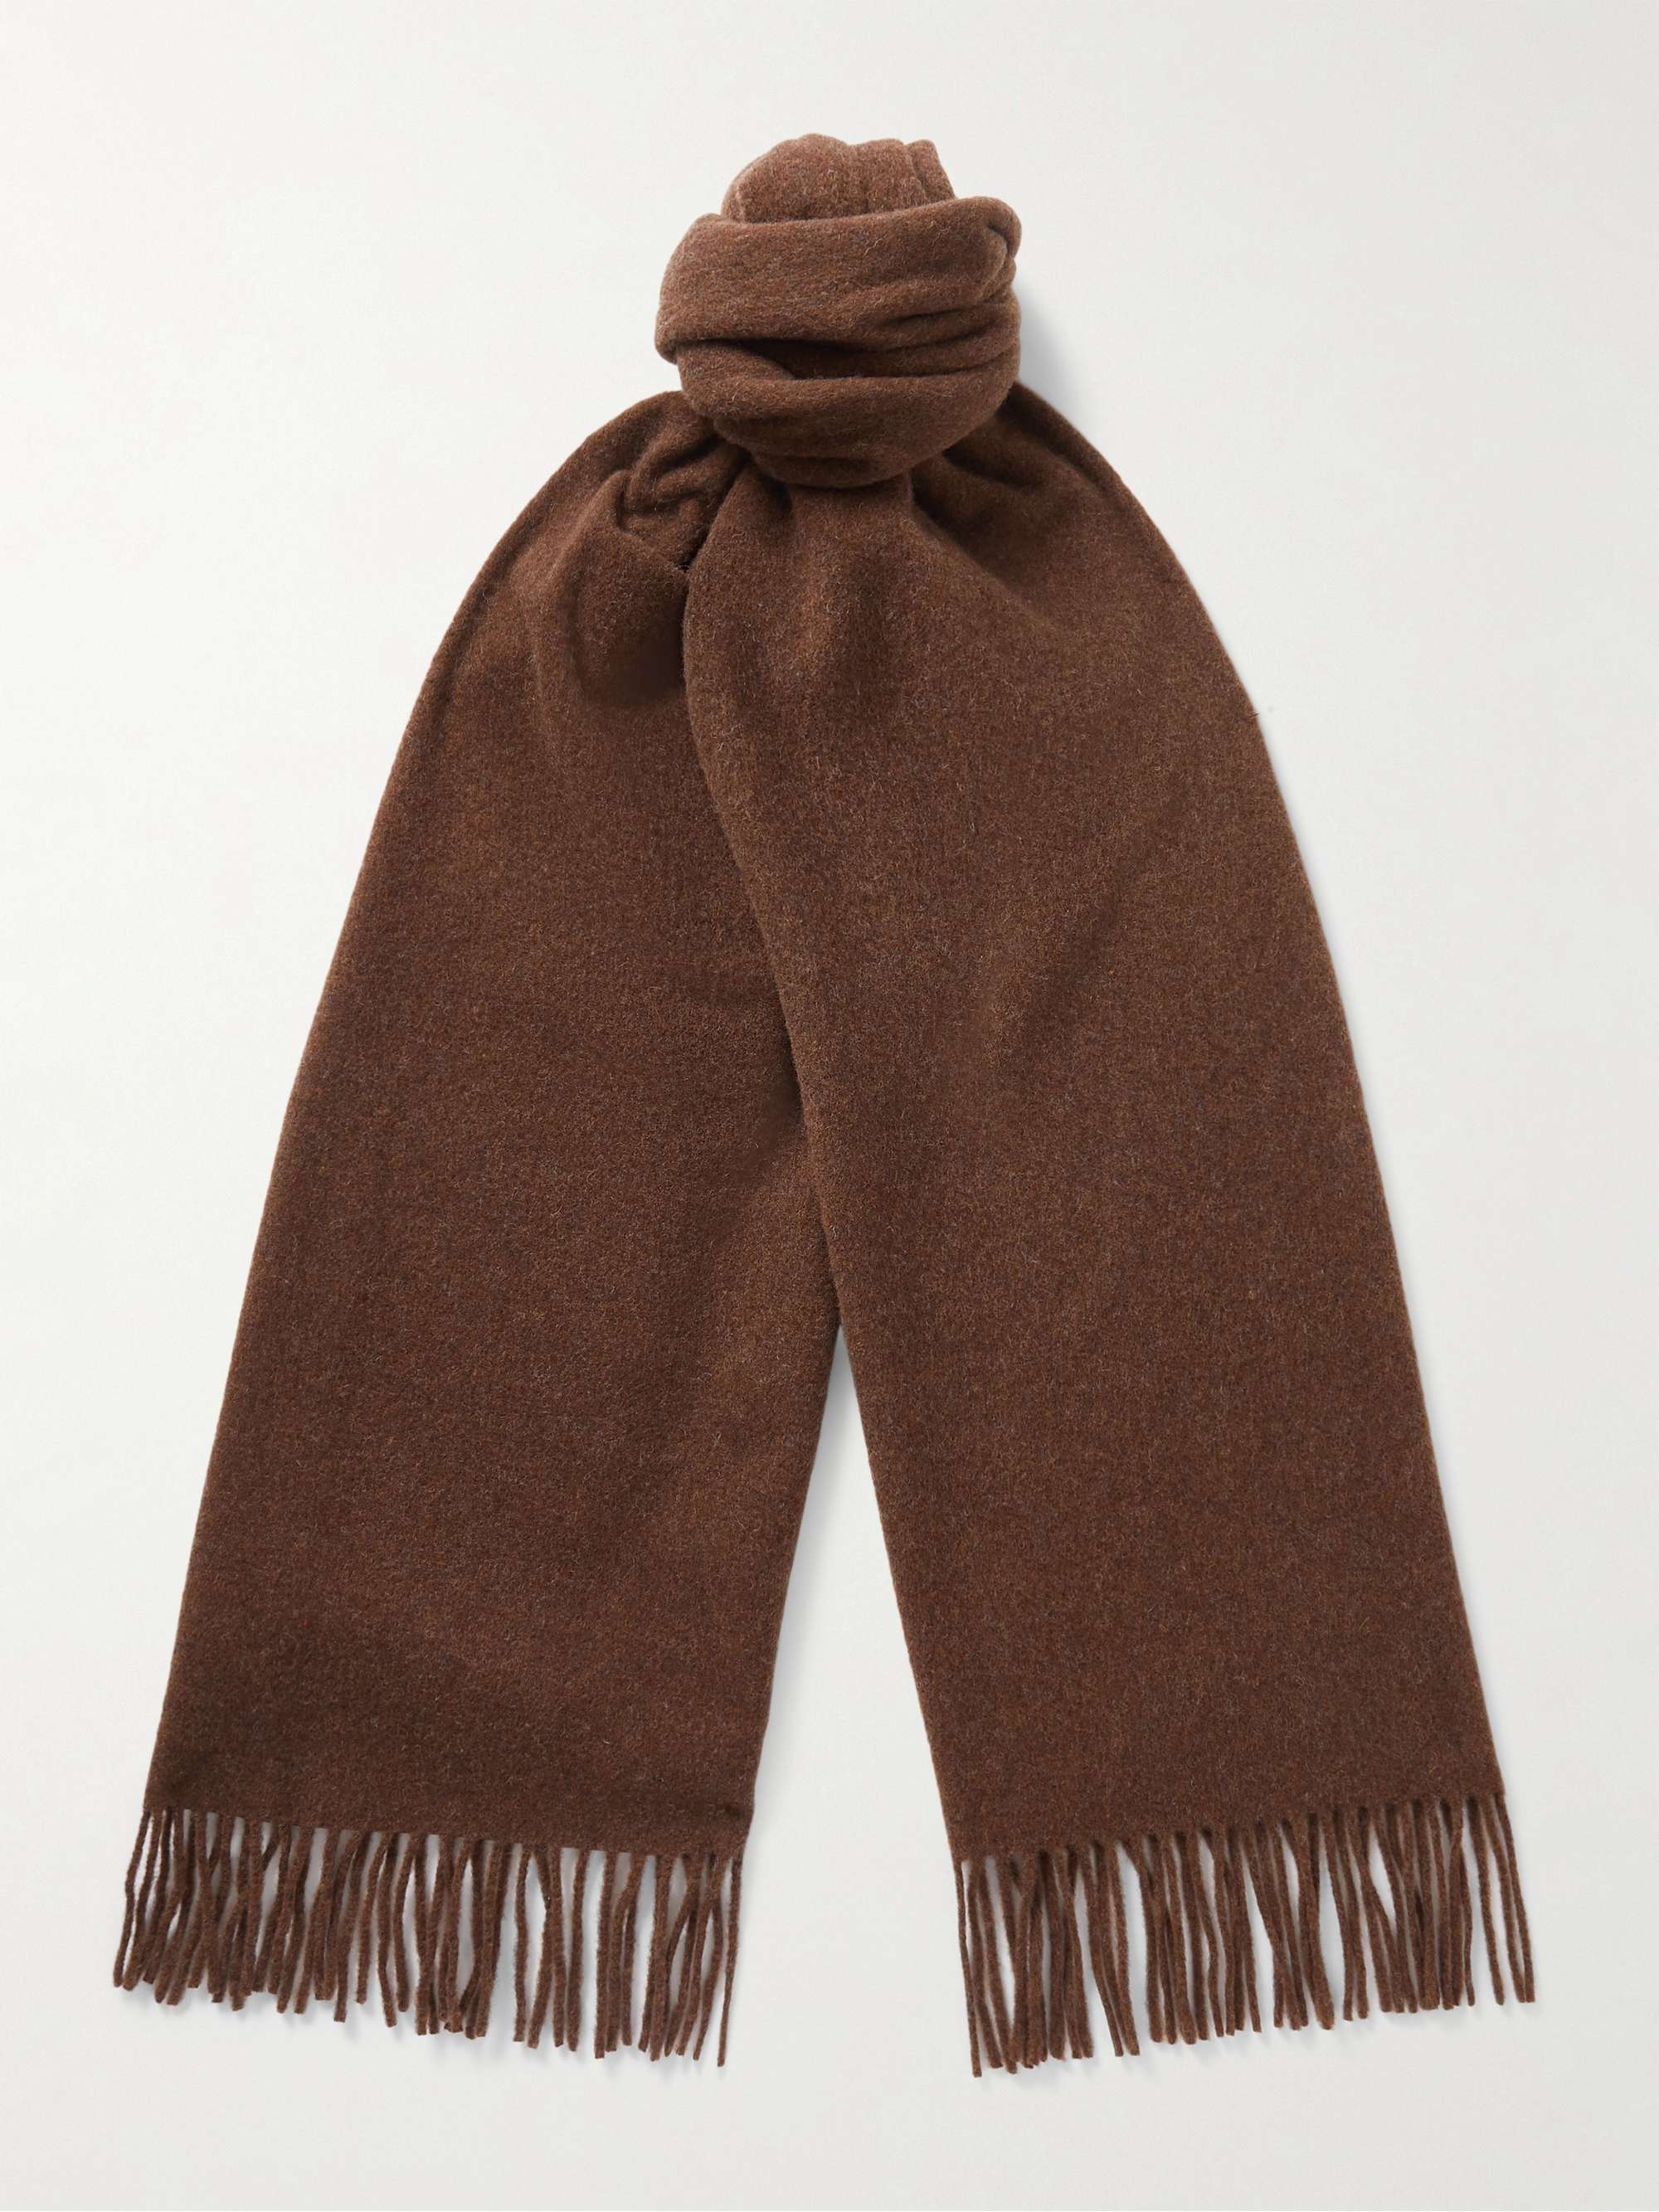 Узкий шерстяной шарф Canada с бахромой ACNE STUDIOS, коричневый новый узкий шарф acne studios canada